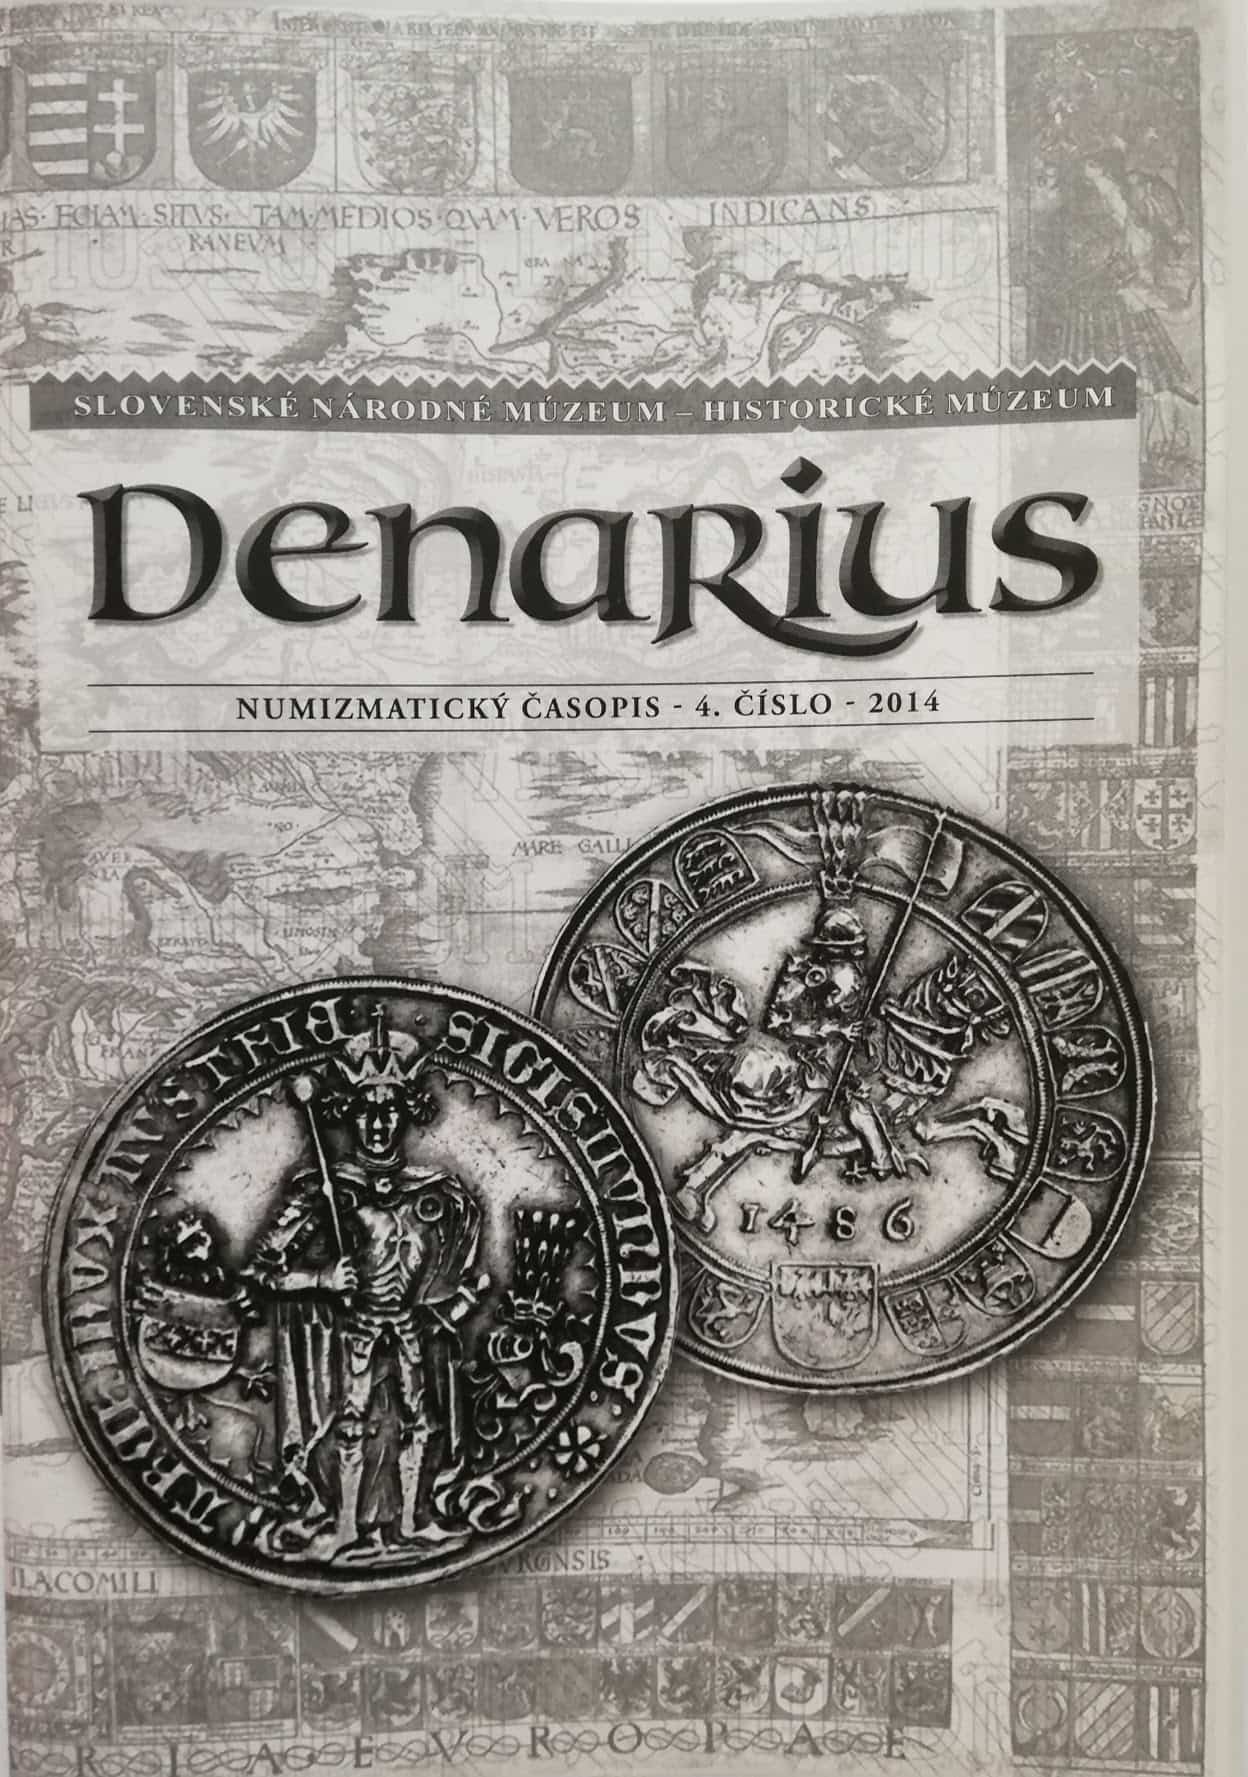 Denarius Numizmatický časopis  4. číslo